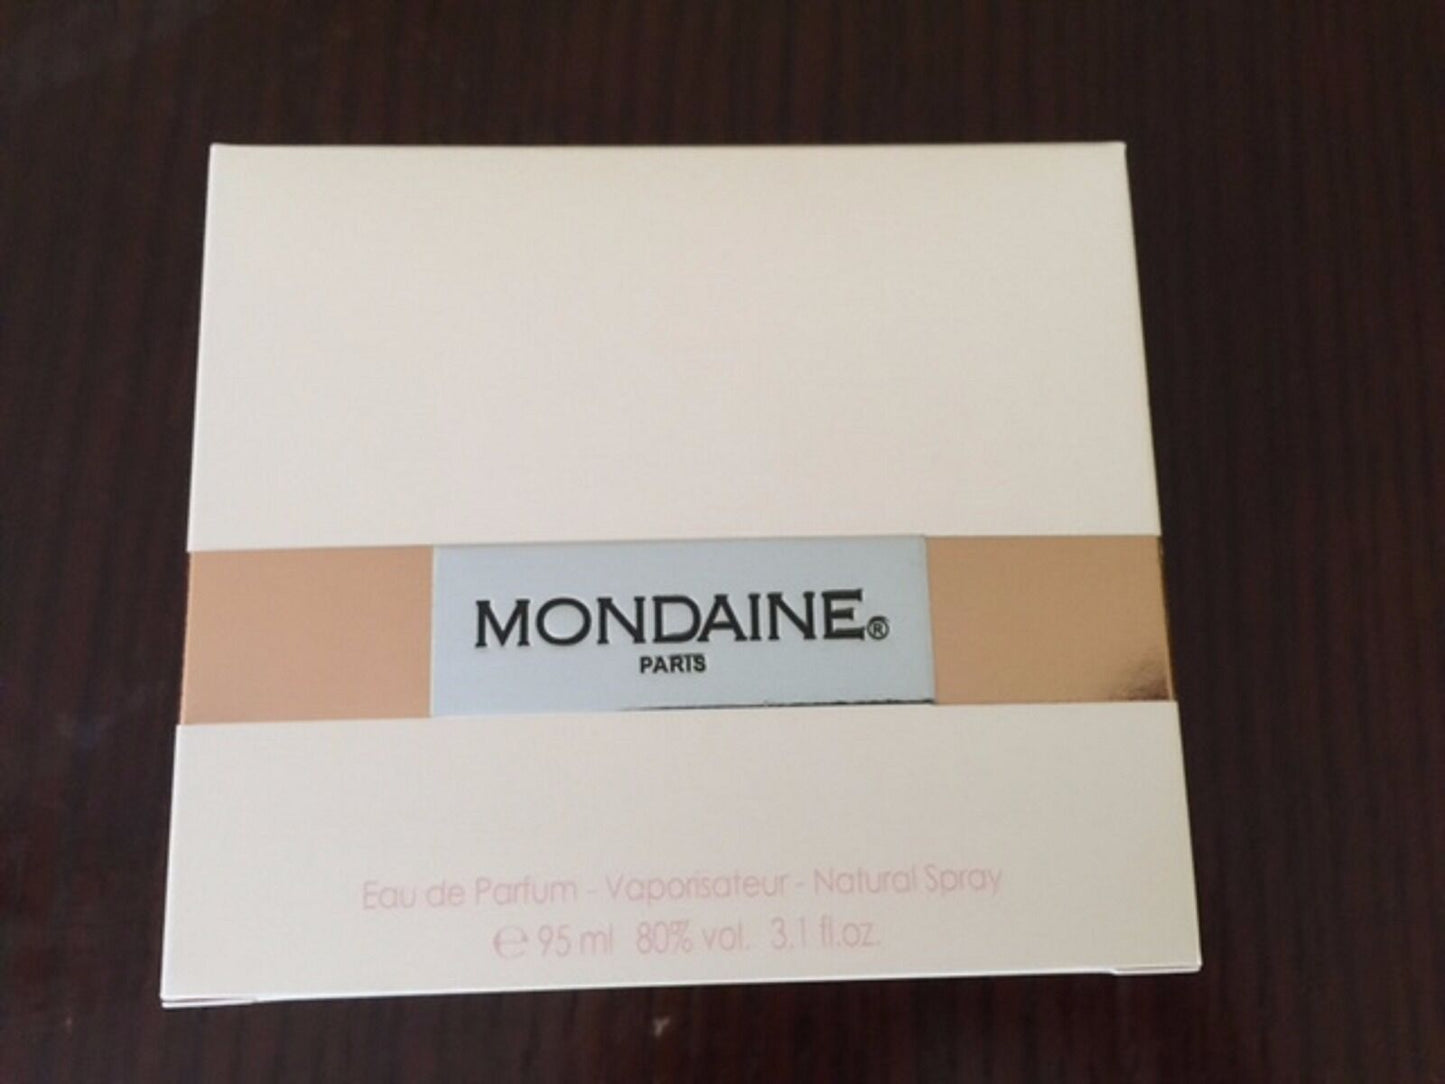 Mondaine By Paris Bleu - Scent In The City - Perfume